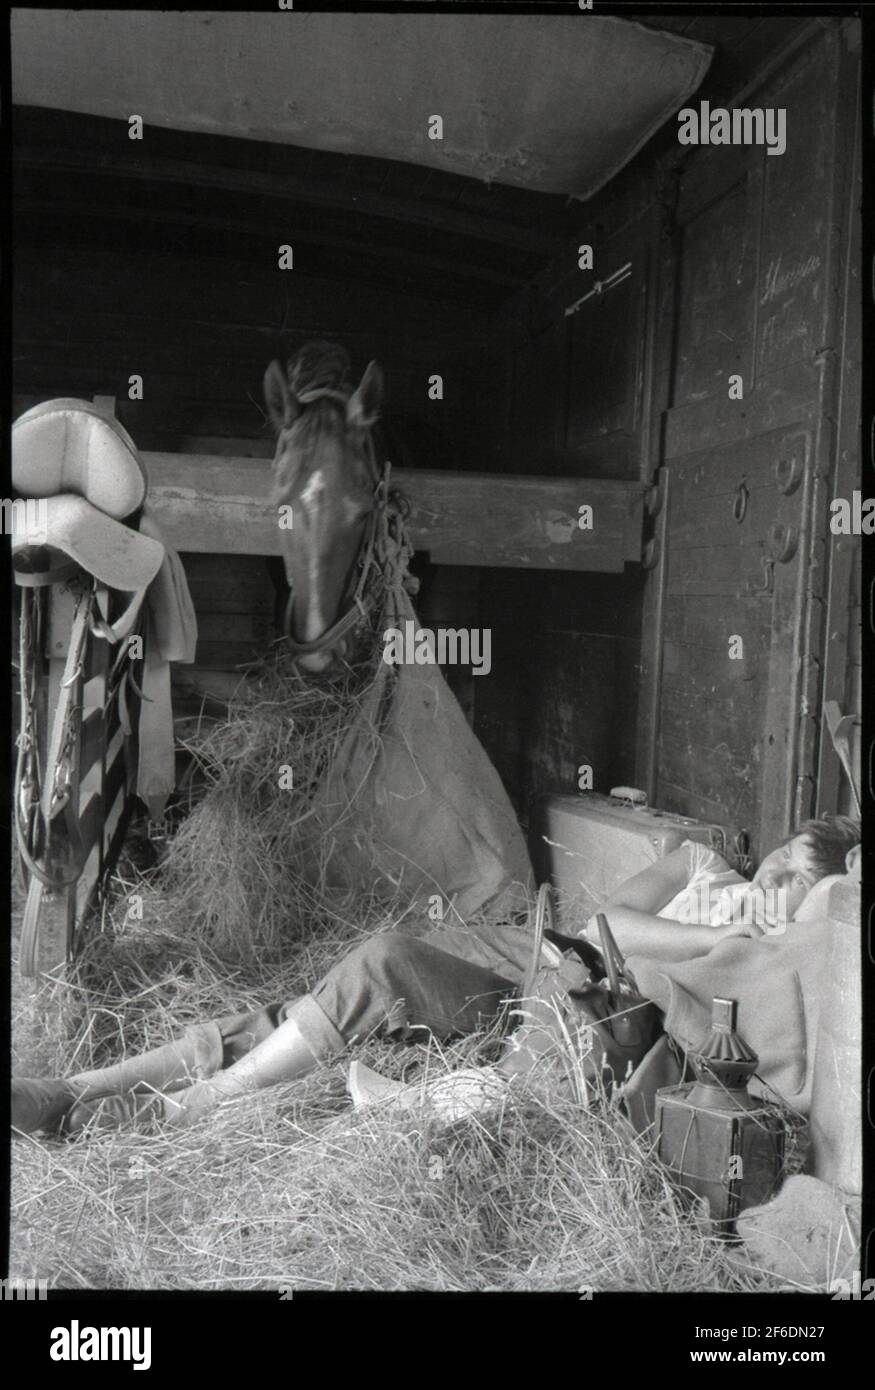 Trasporto di animali. Cavalli di valore sono stati spesso trasportati in carrelli specializzati con i loro caregivers. Foto Stock